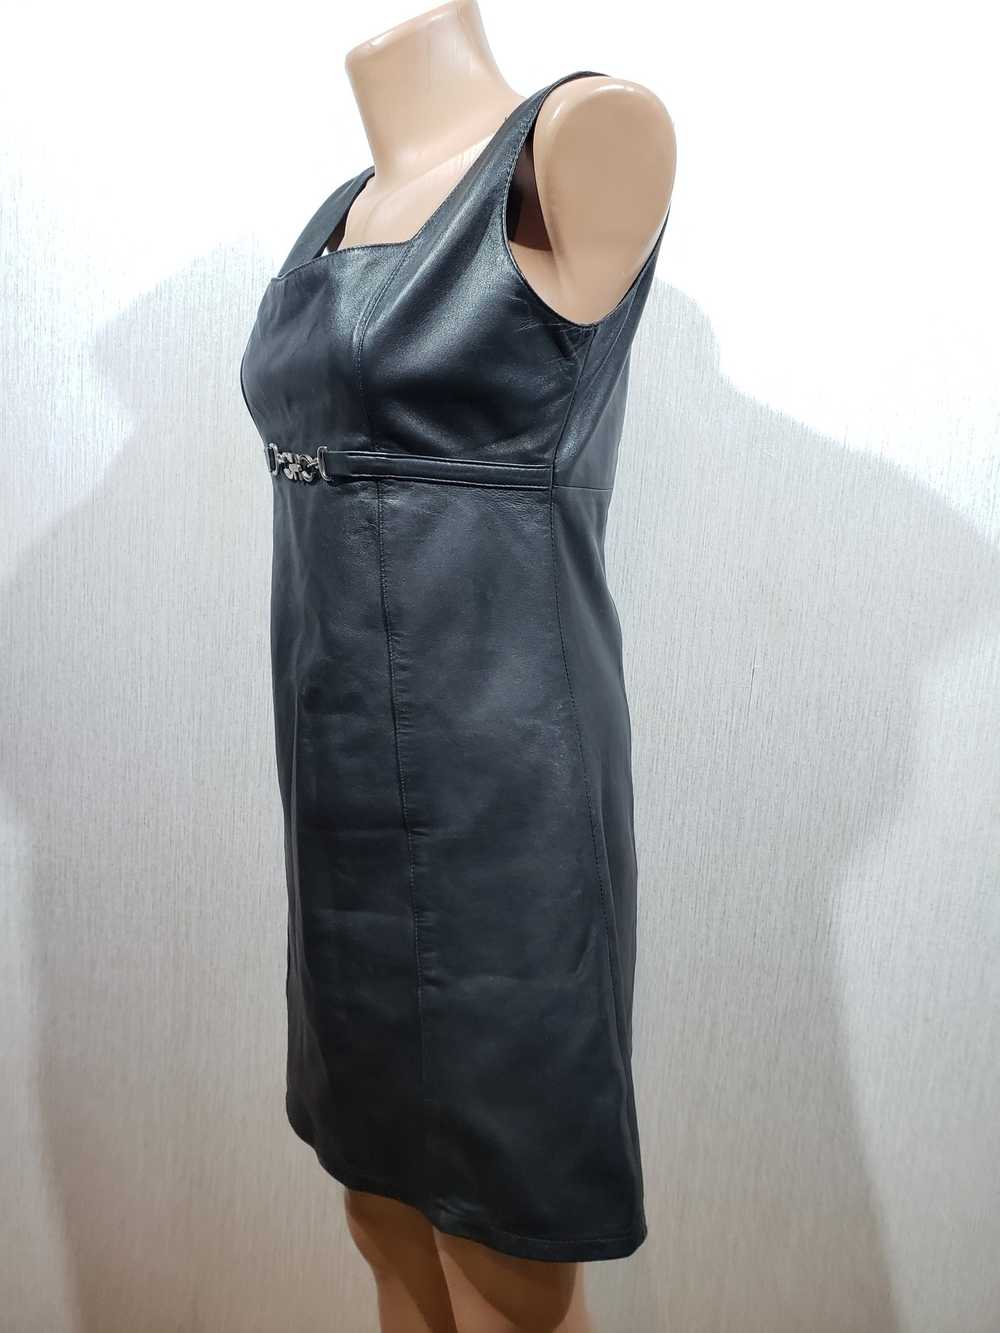 Movie × Rare Stylish black leather dress. - image 3